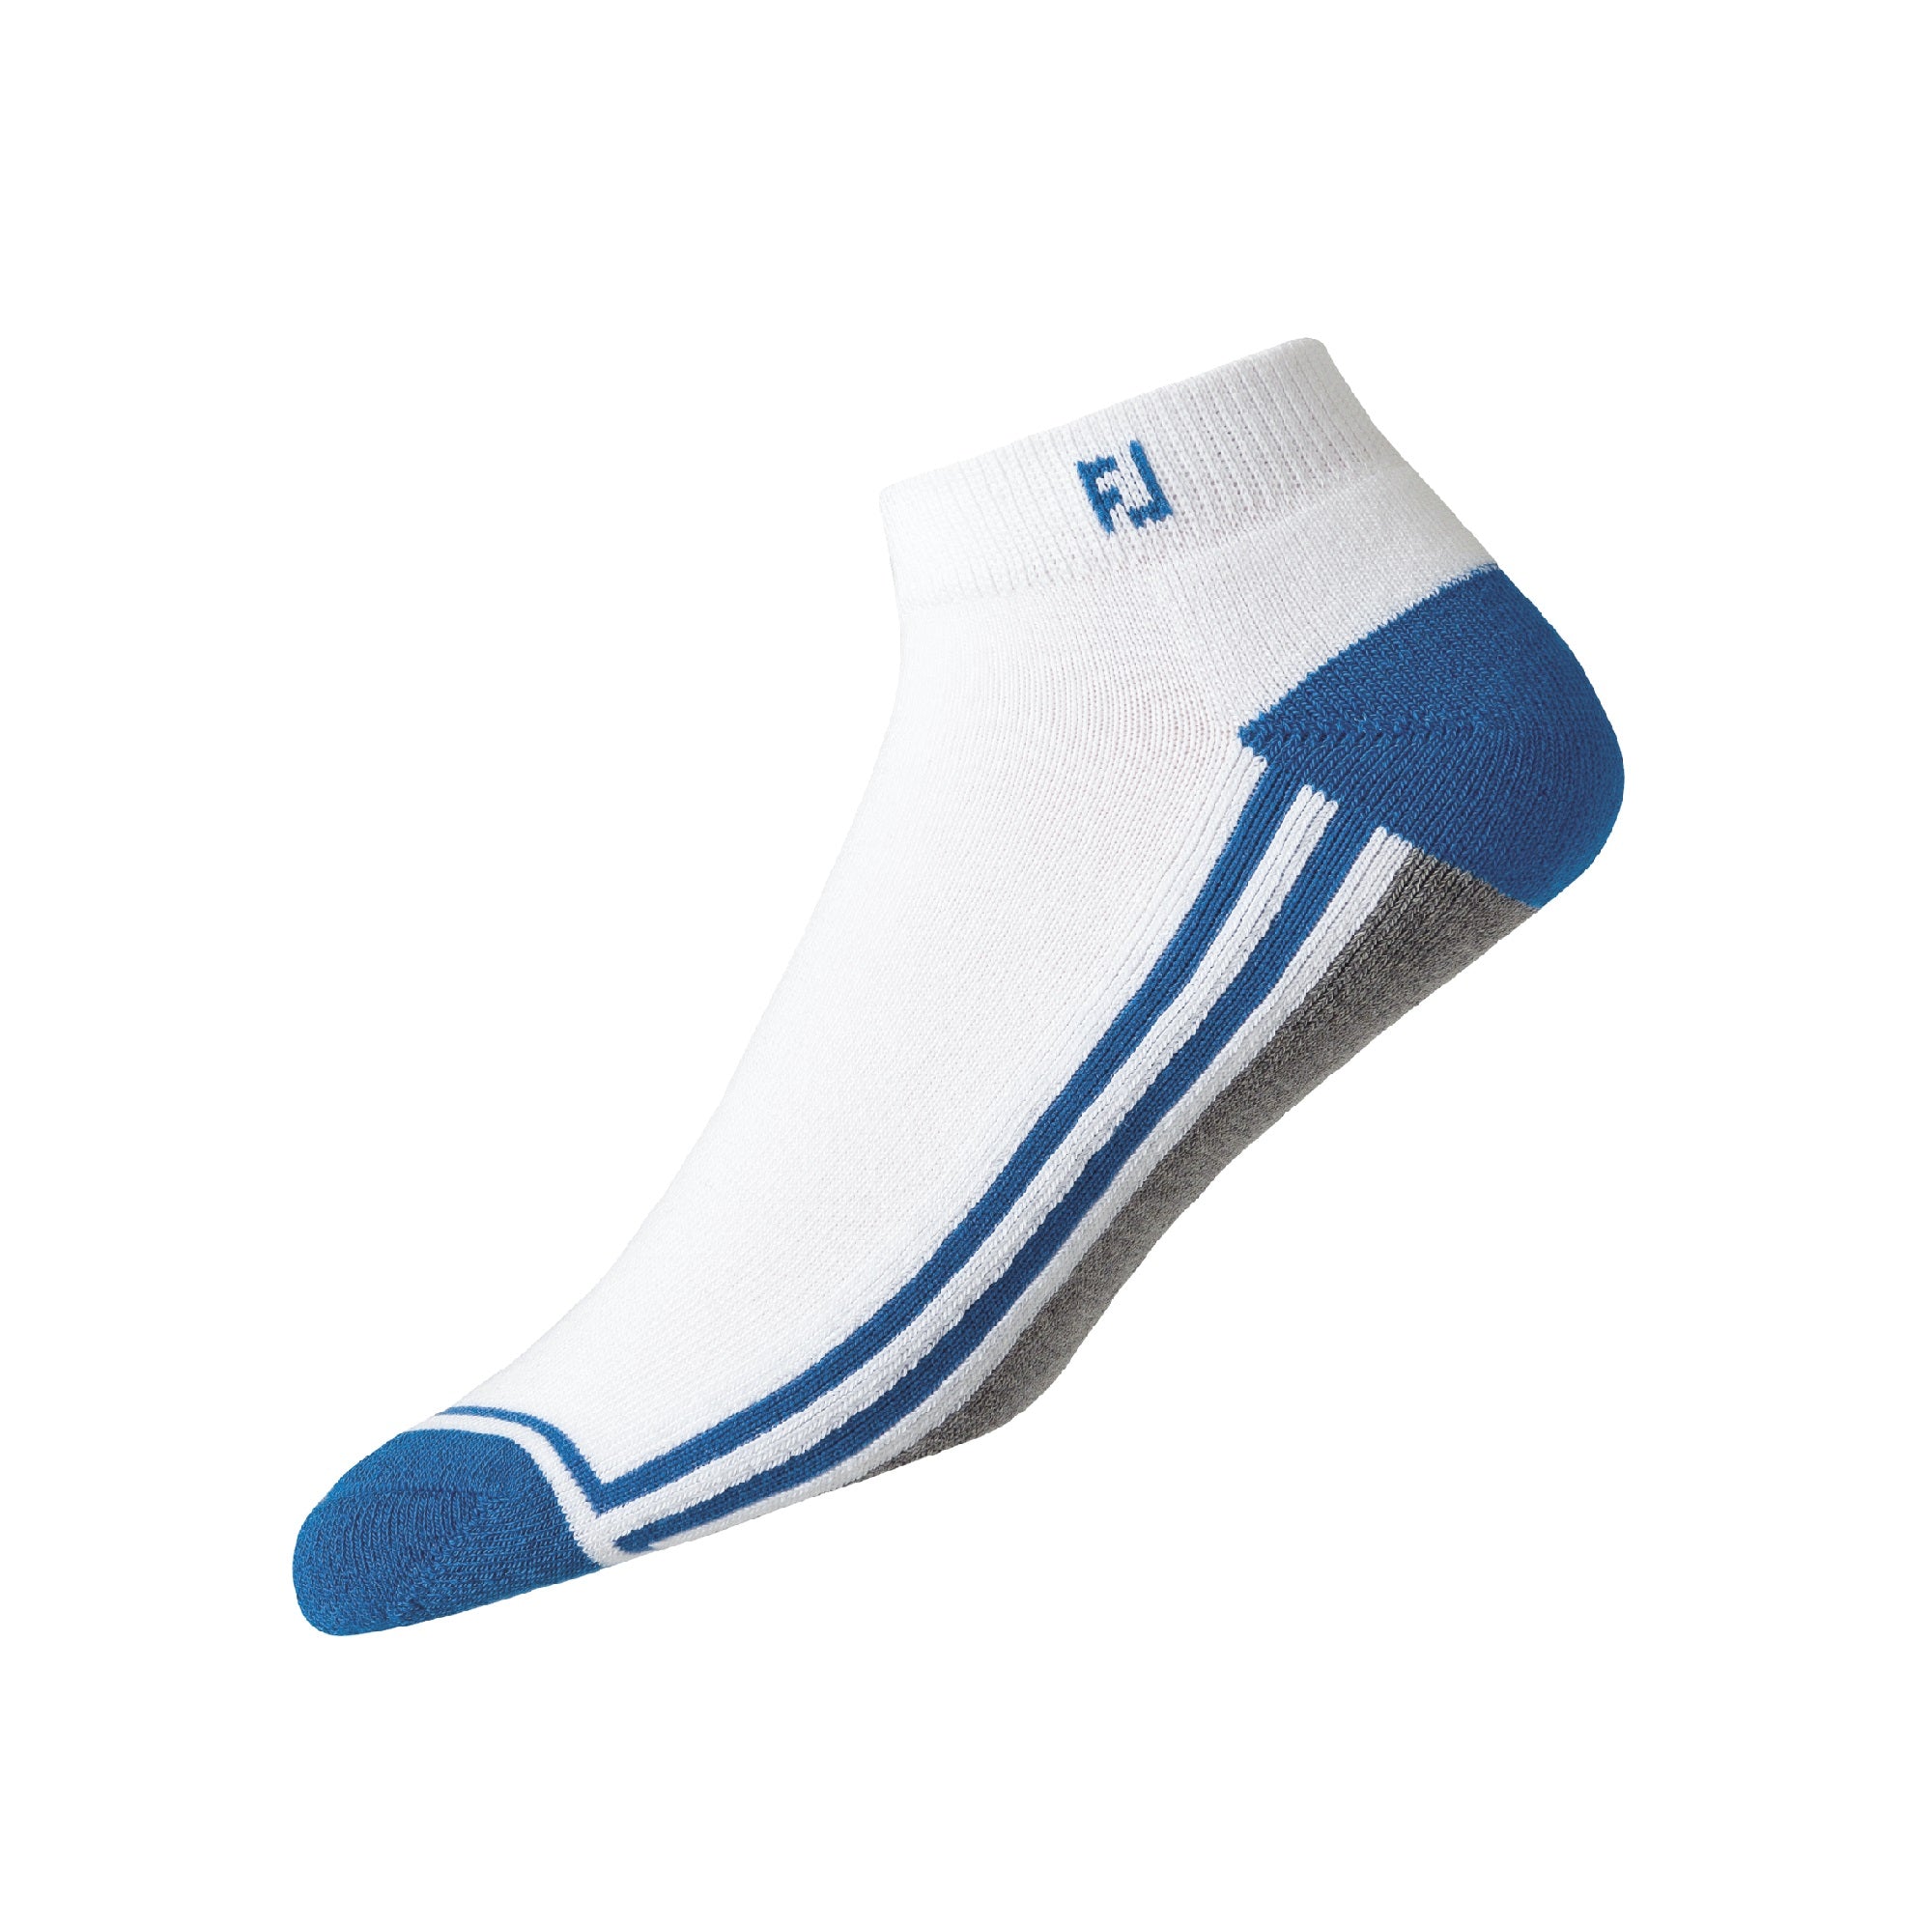 footjoy-prodry-sport-golf-socks-16120g